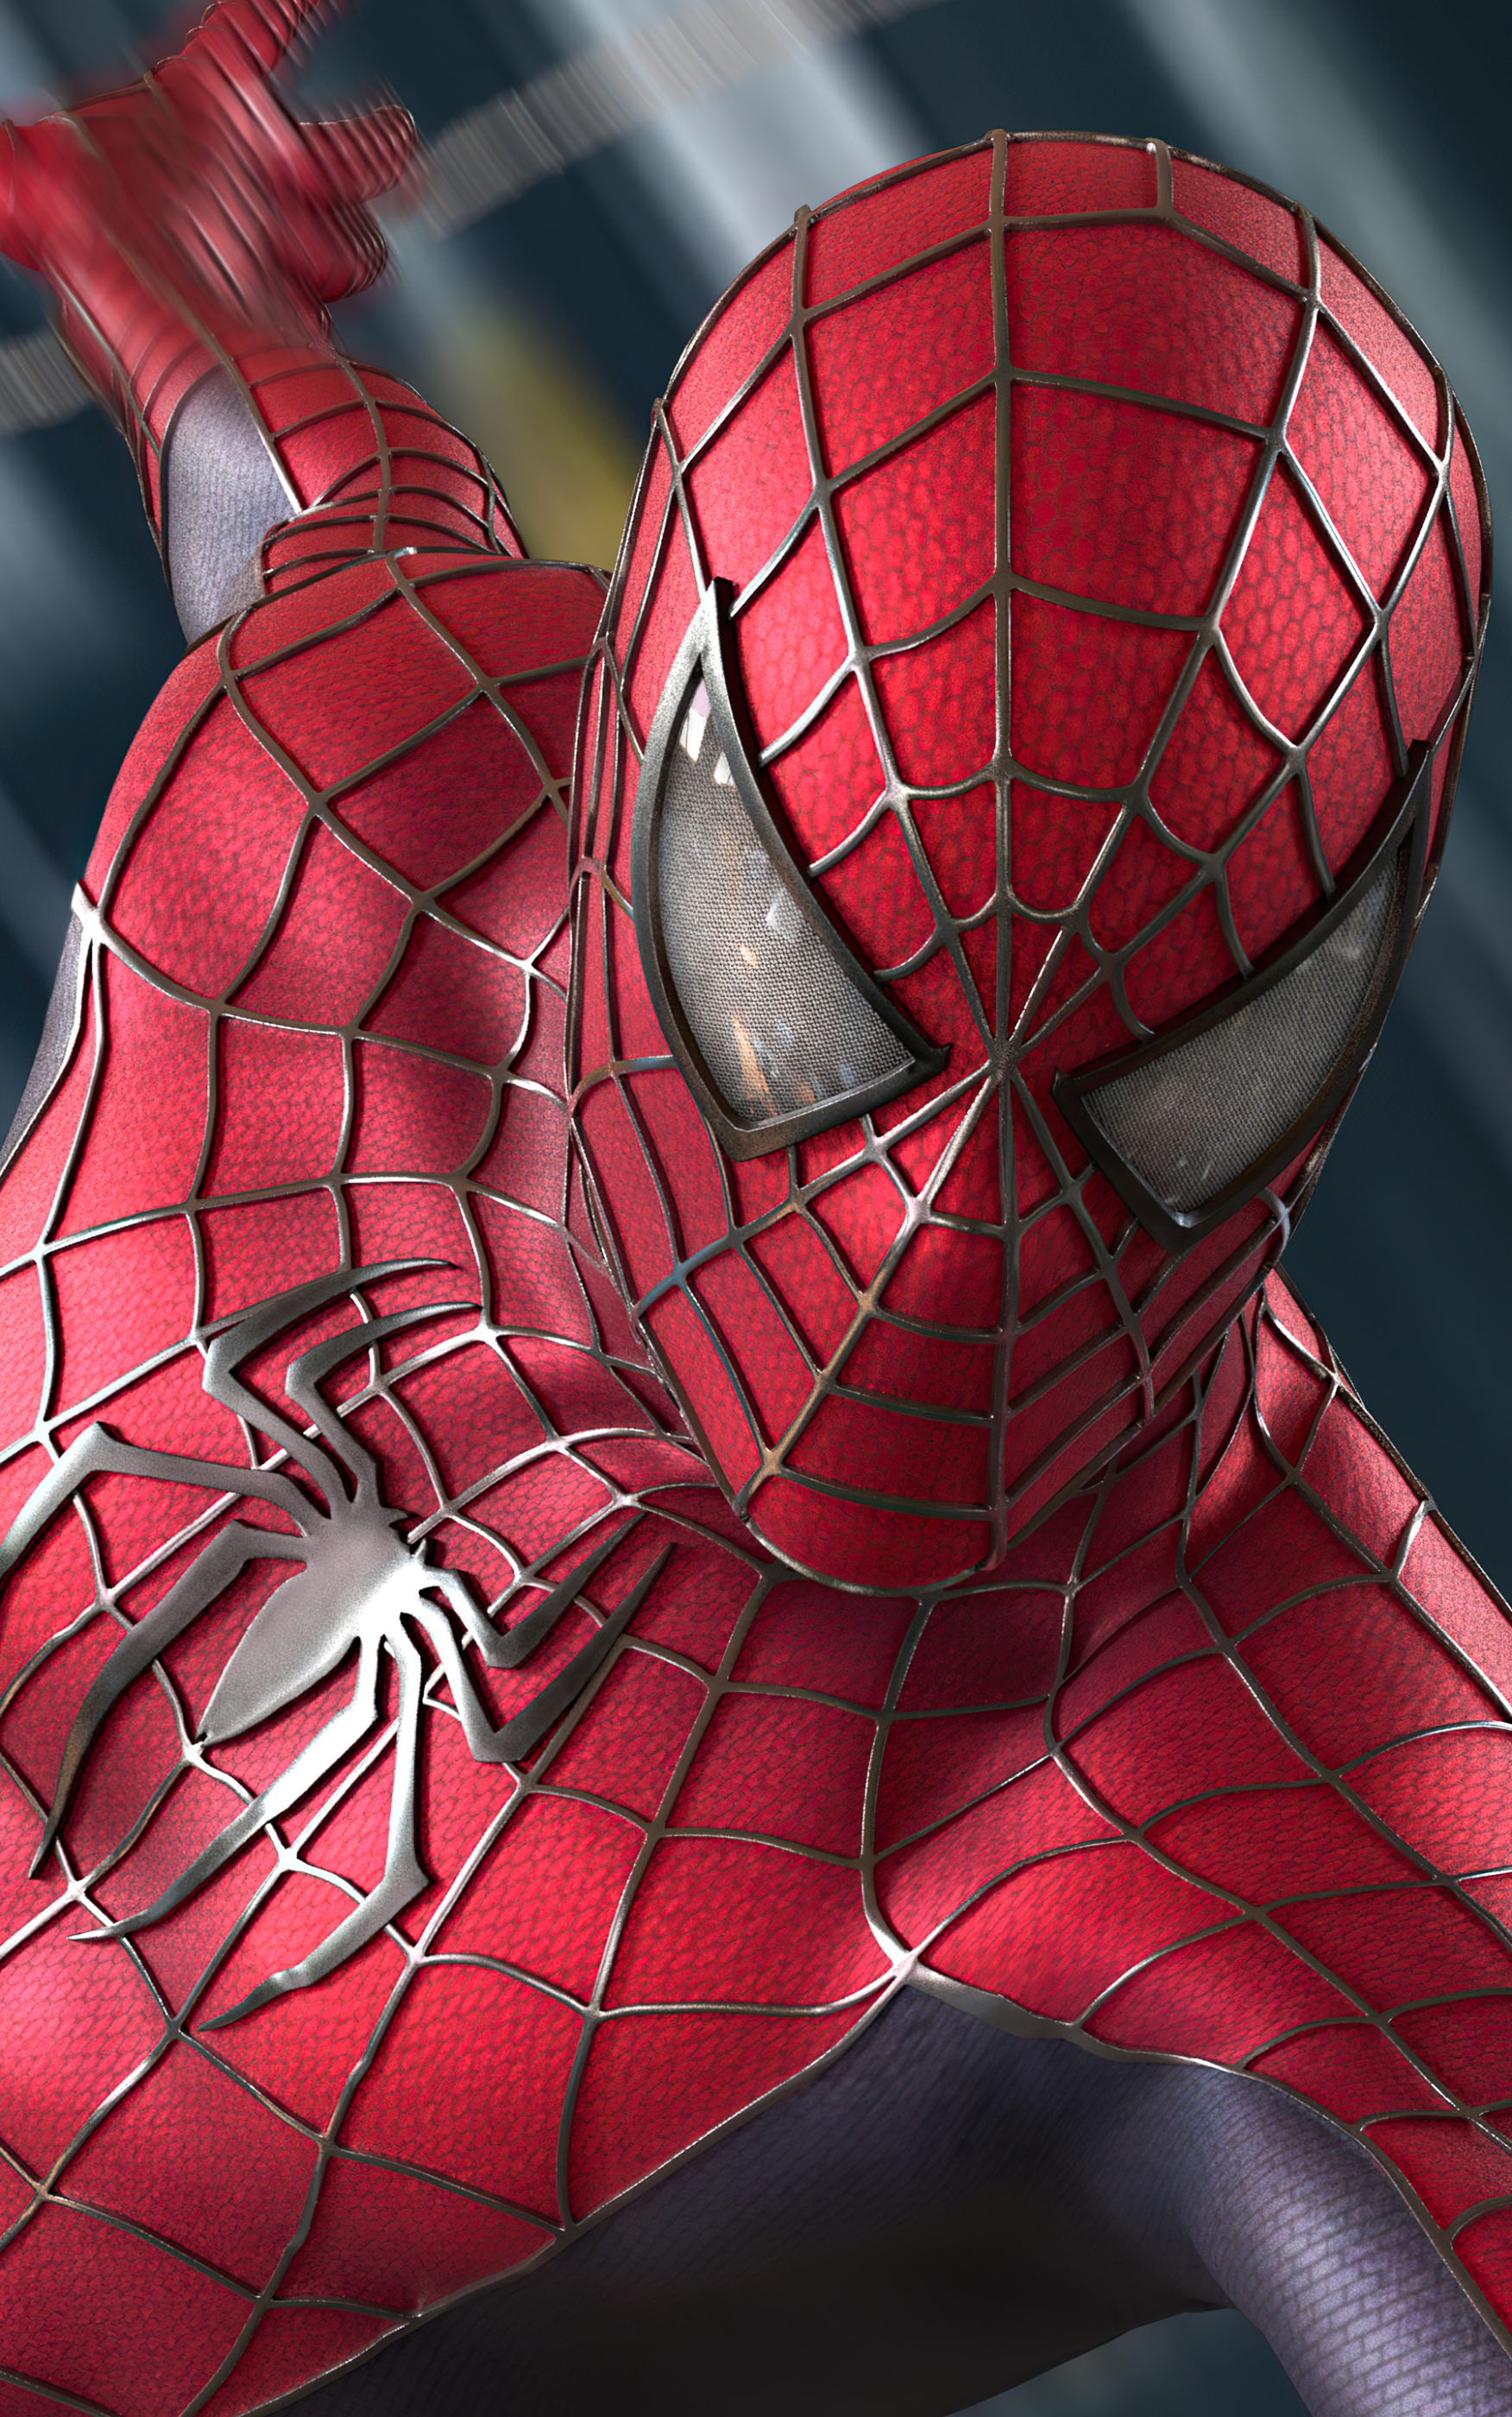 Free download wallpaper Spider Man, Movie, Spider Man 2 on your PC desktop